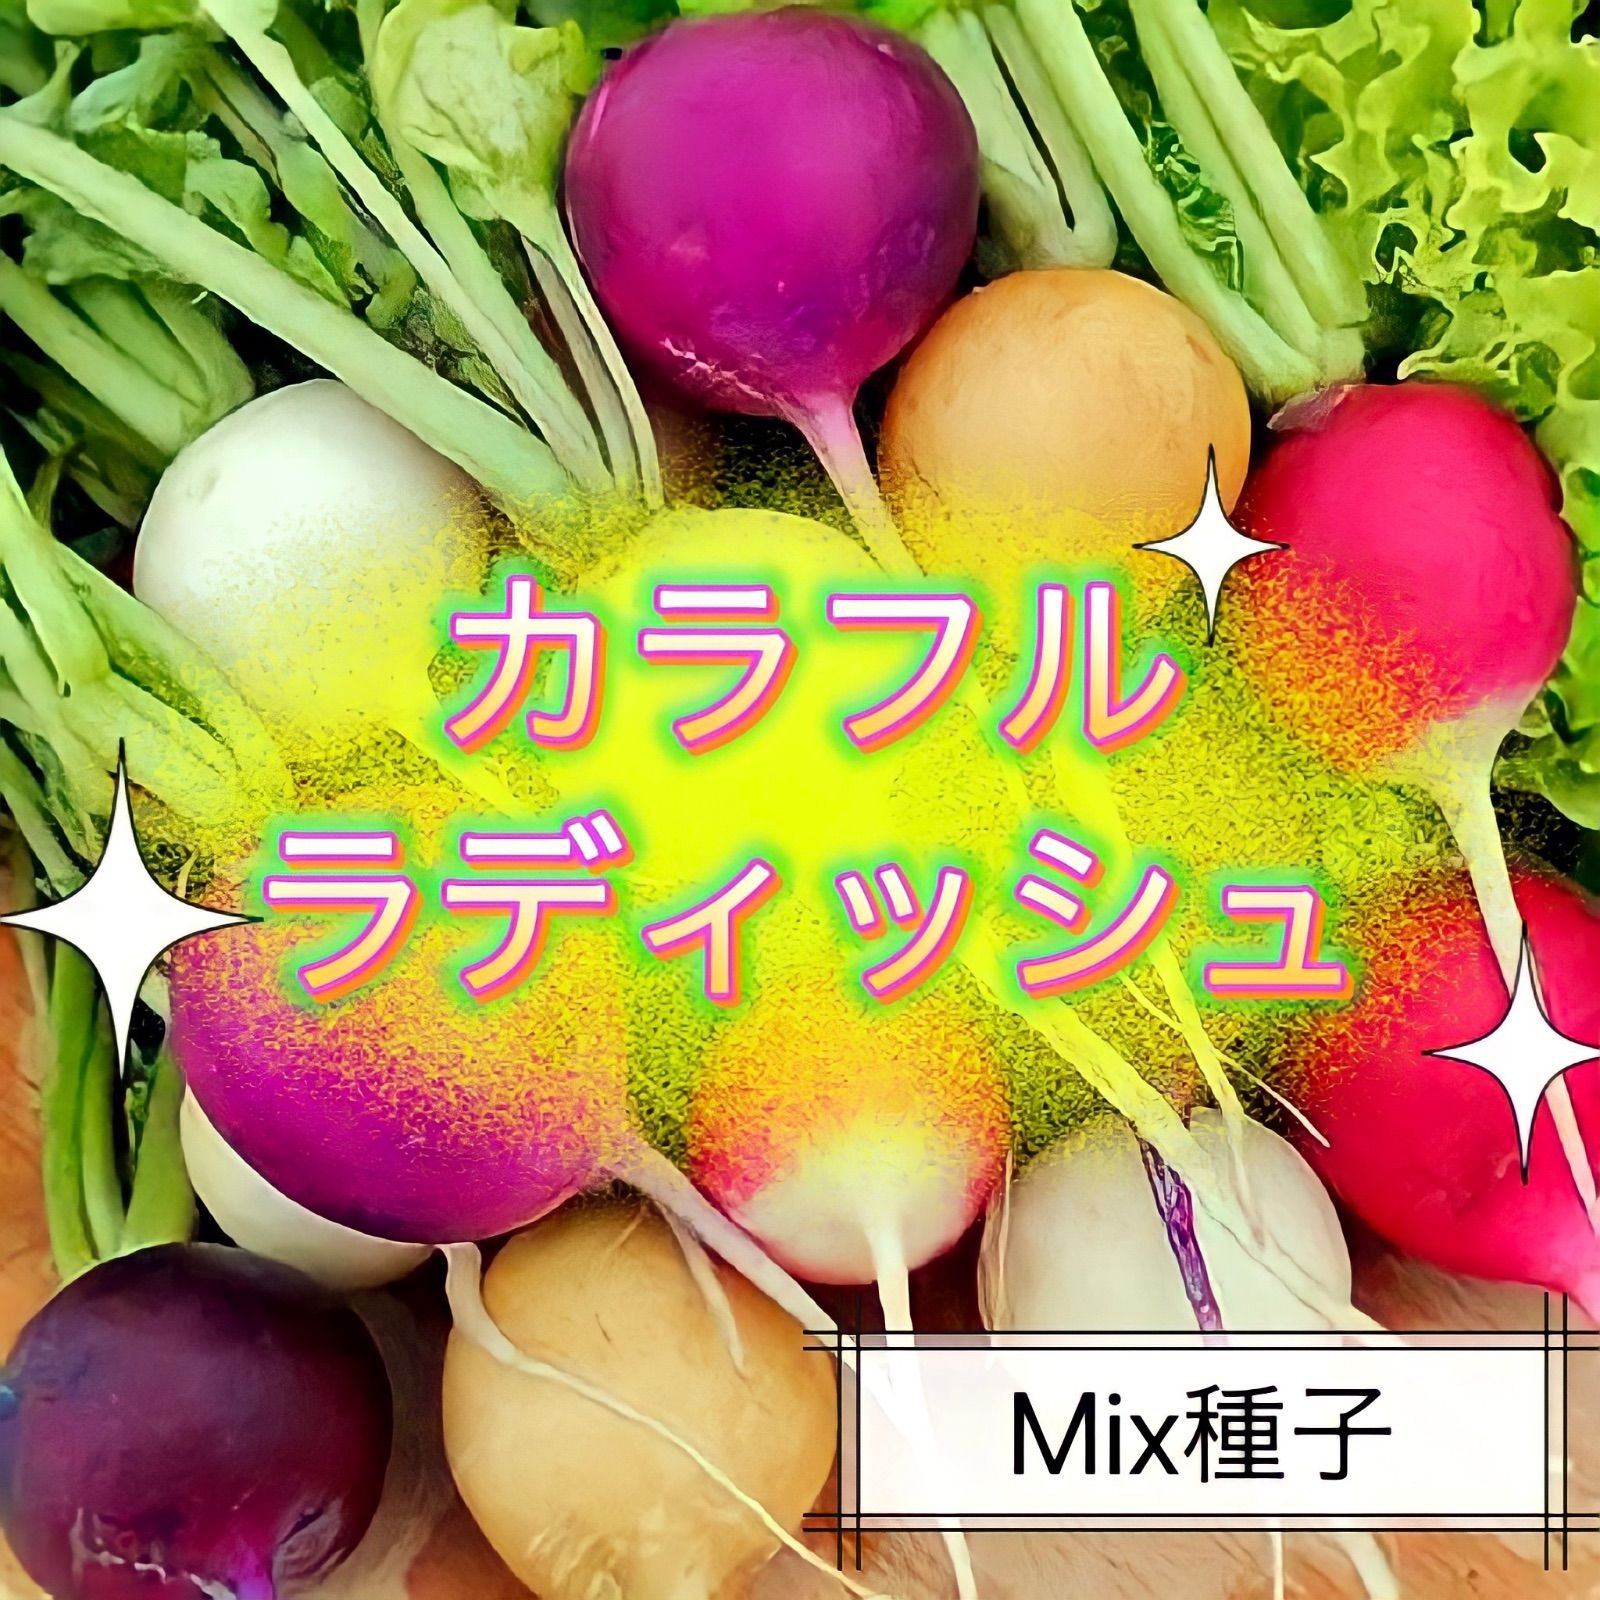 ☆彩ラディッシュ☆ Mix種子2㎖330円 6色二十日大根の種 カラフル西洋